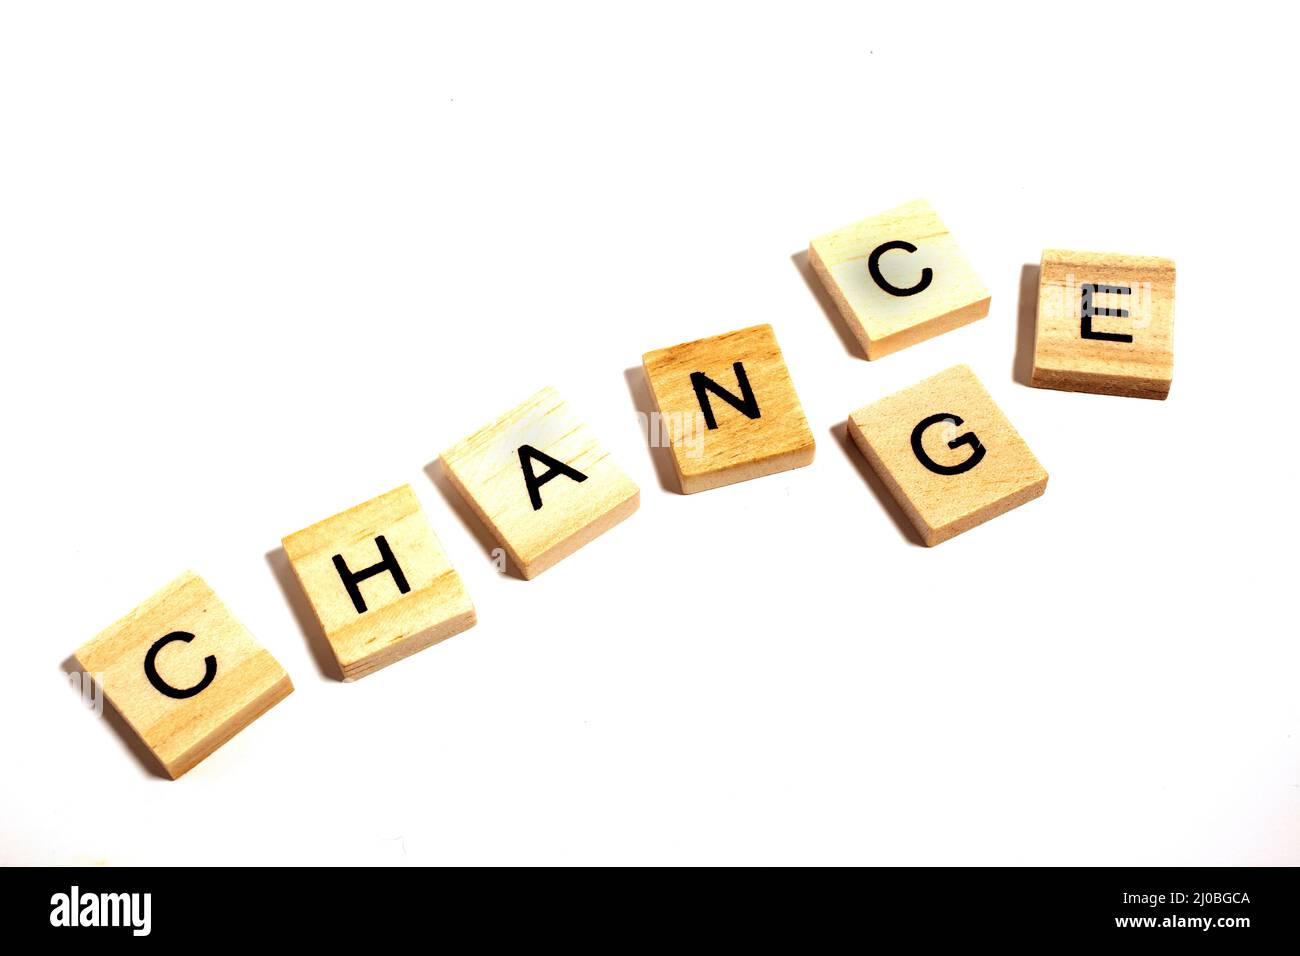 Veränderung und Zufall - Wort abstrakt in Holzbuchstaben isoliert auf weißem Hintergrund Stockfoto